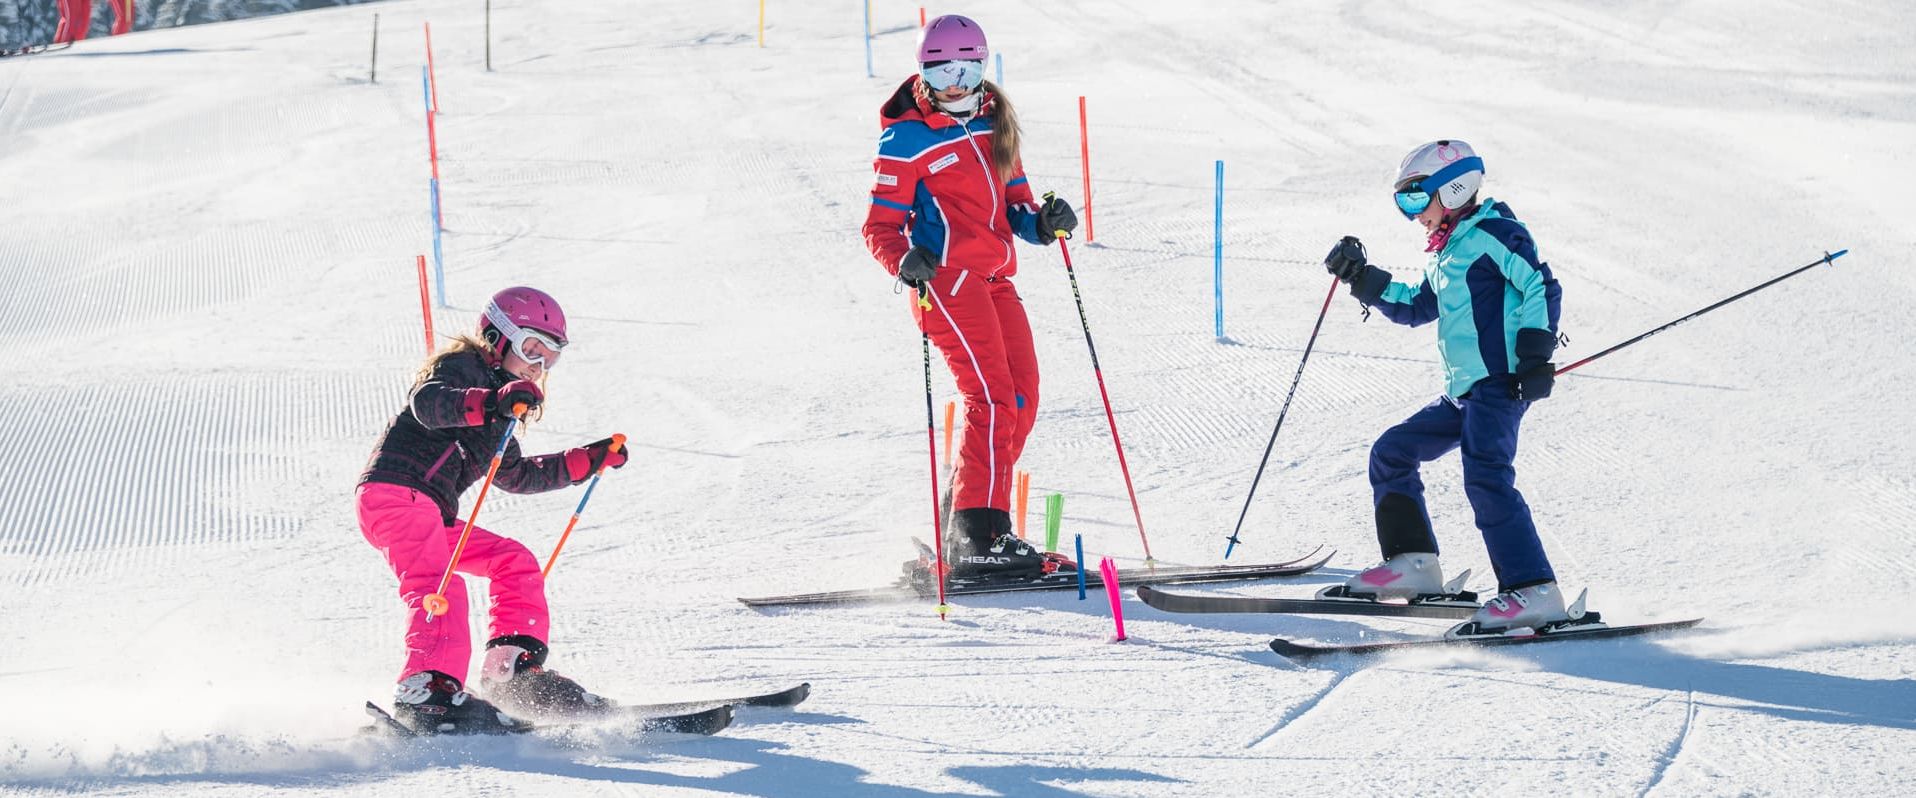 Dänisch Dansk Skikurs für Kinder Maria Alm